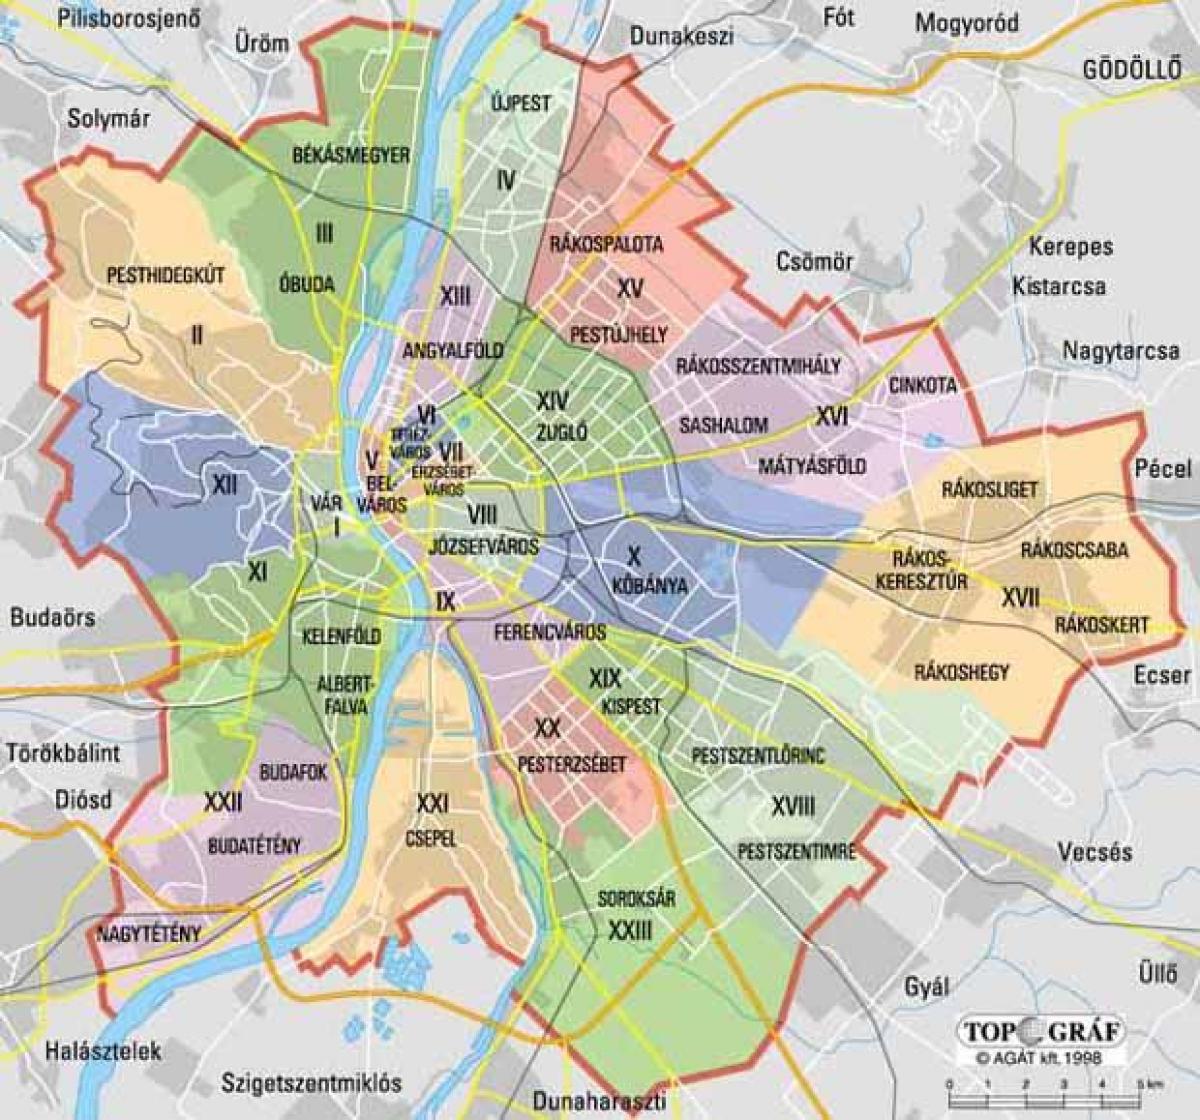 Mapa do distrito de Budapeste